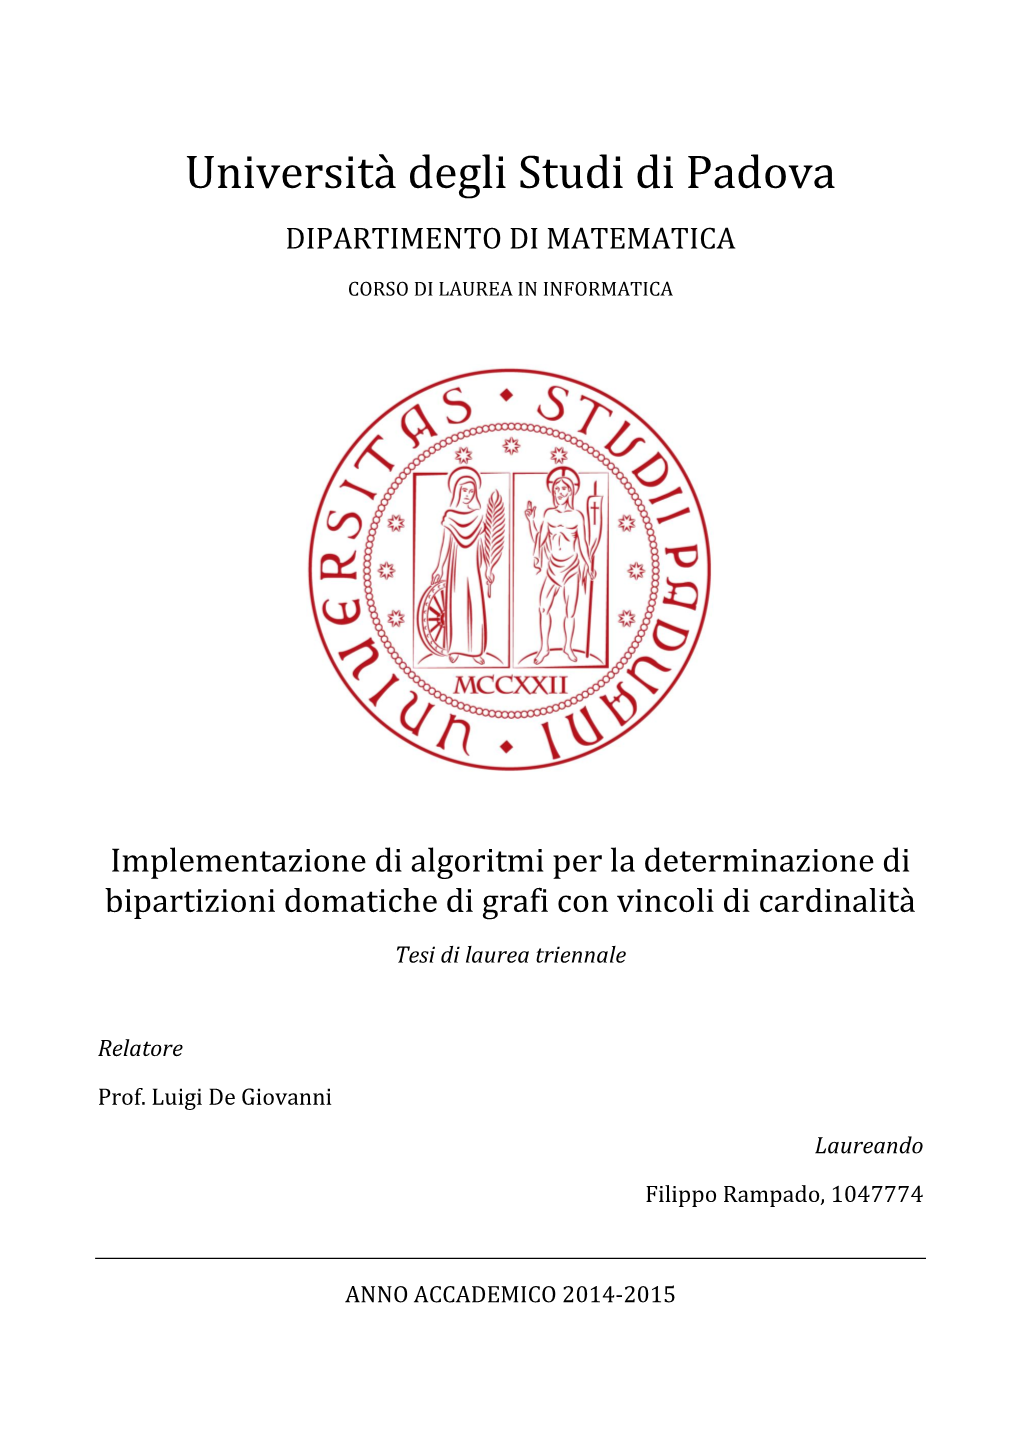 Università Degli Studi Di Padova DIPARTIMENTO DI MATEMATICA